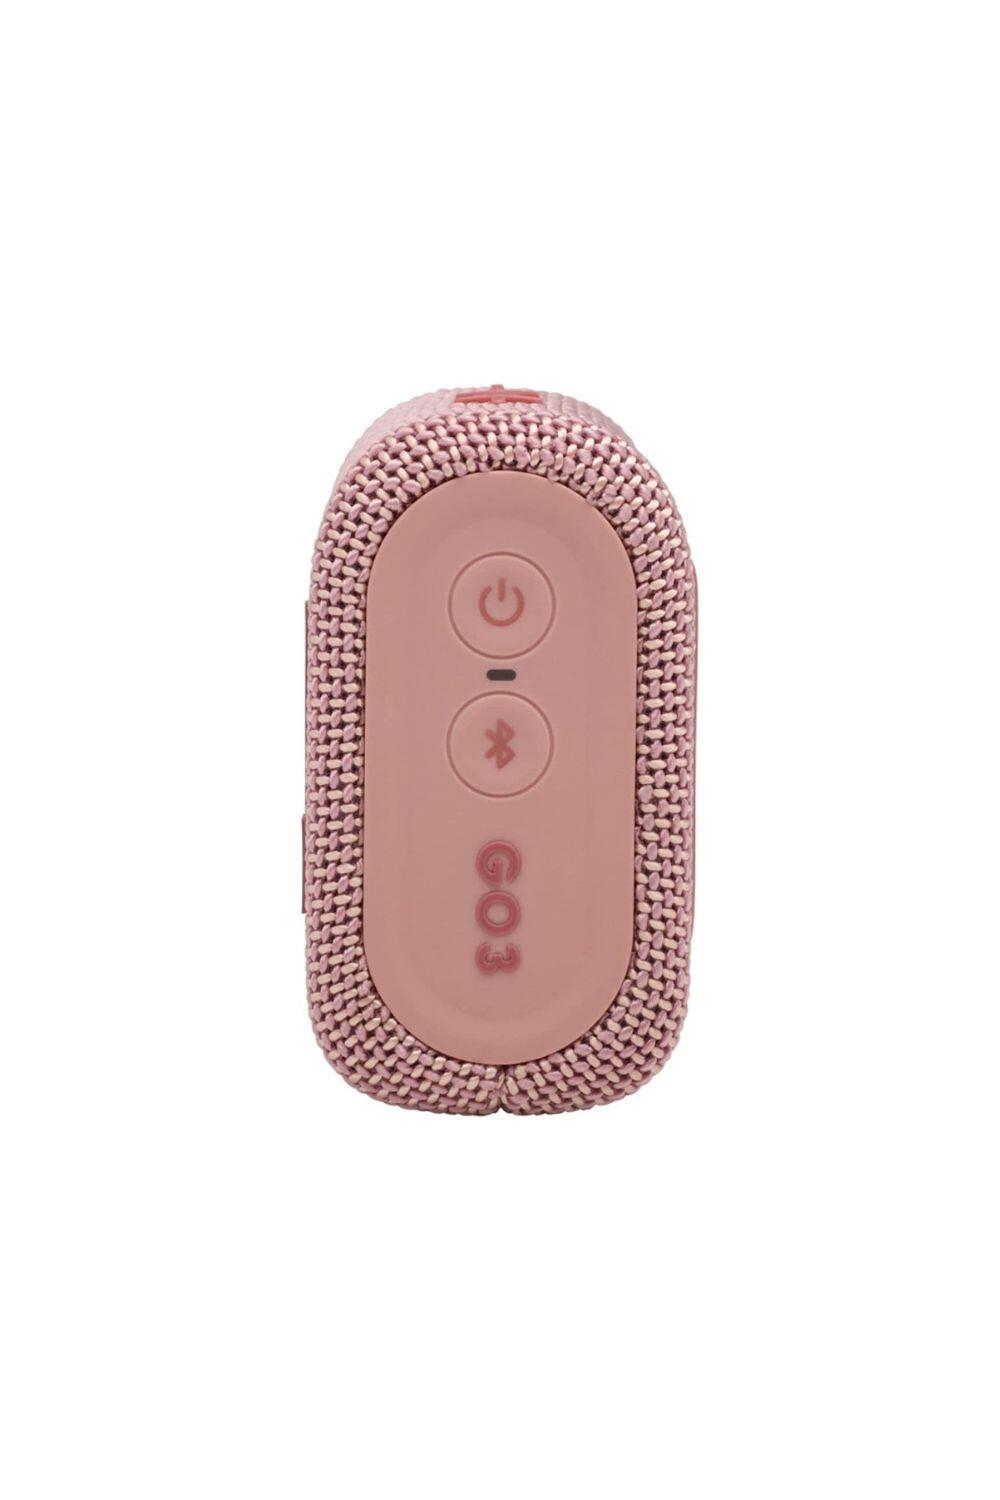 JBL GO 3 Waterproof/Dustproof Wireless Bluetooth Speaker 3/6